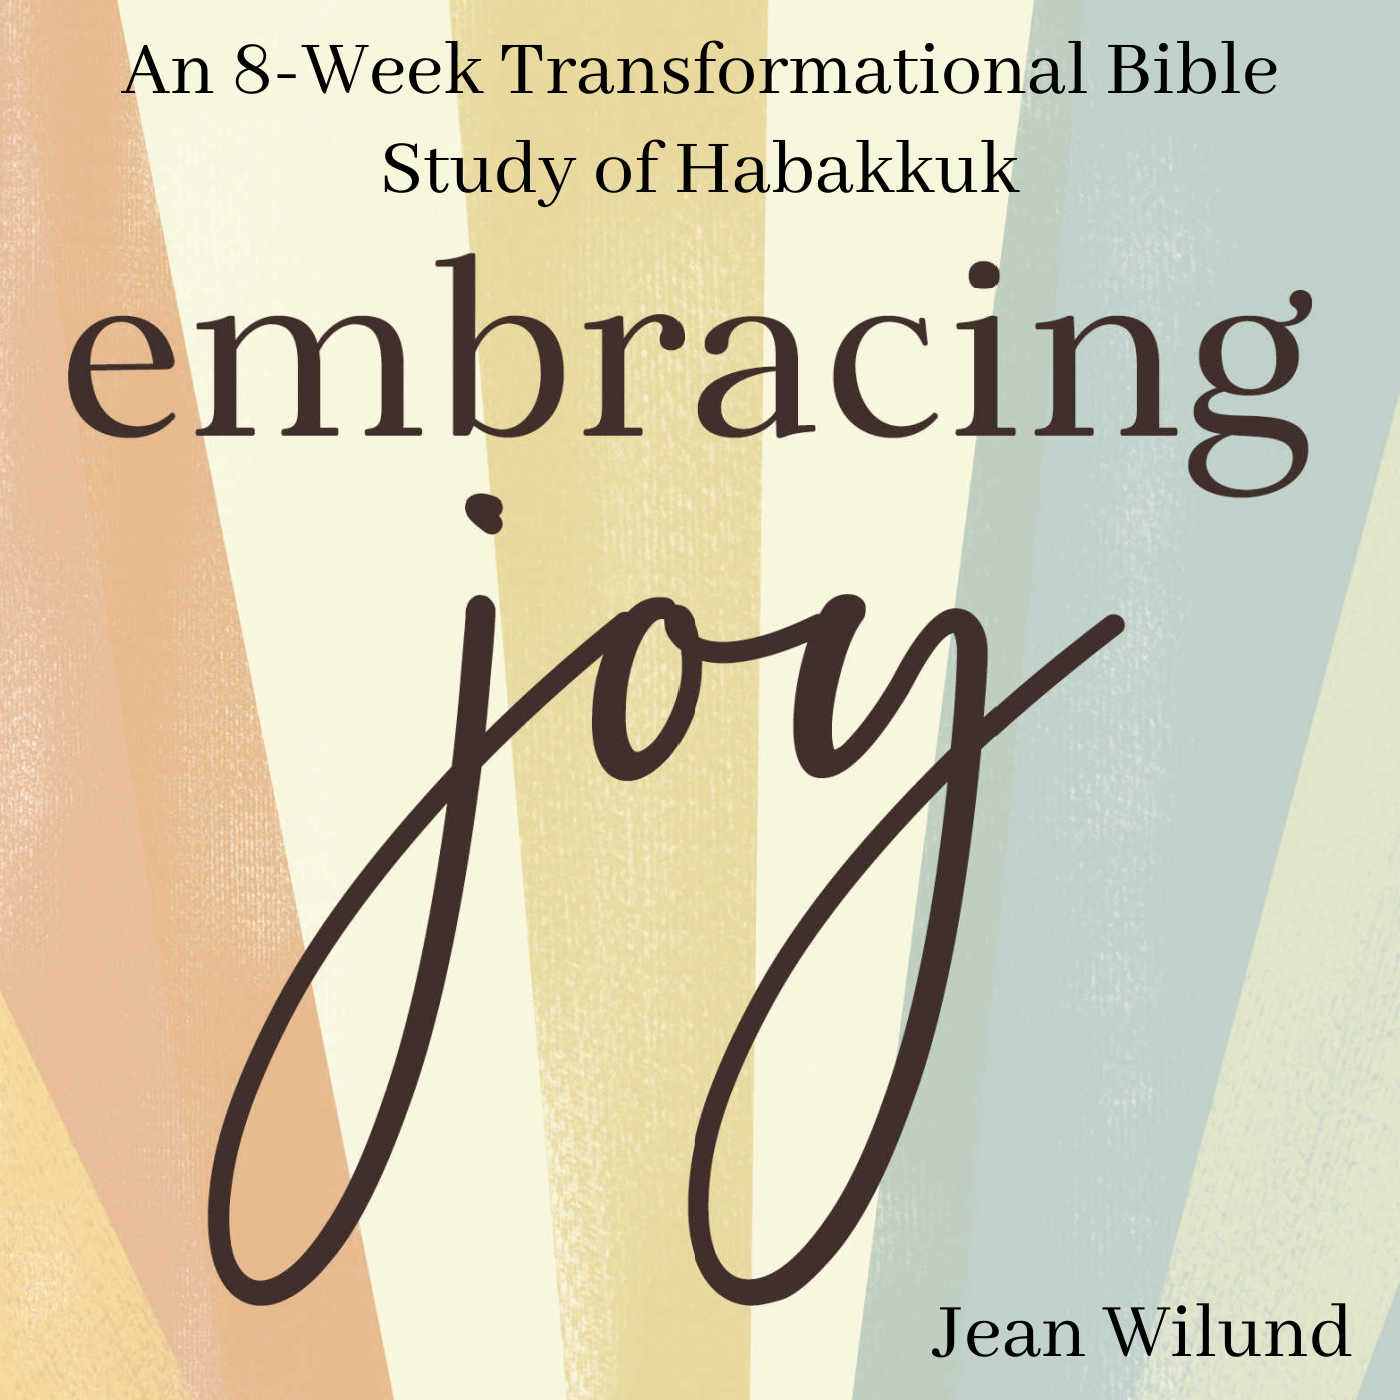 Embracing Joy: An 8-Week Transformational Bible study of Habakkuk by Jean Wilund